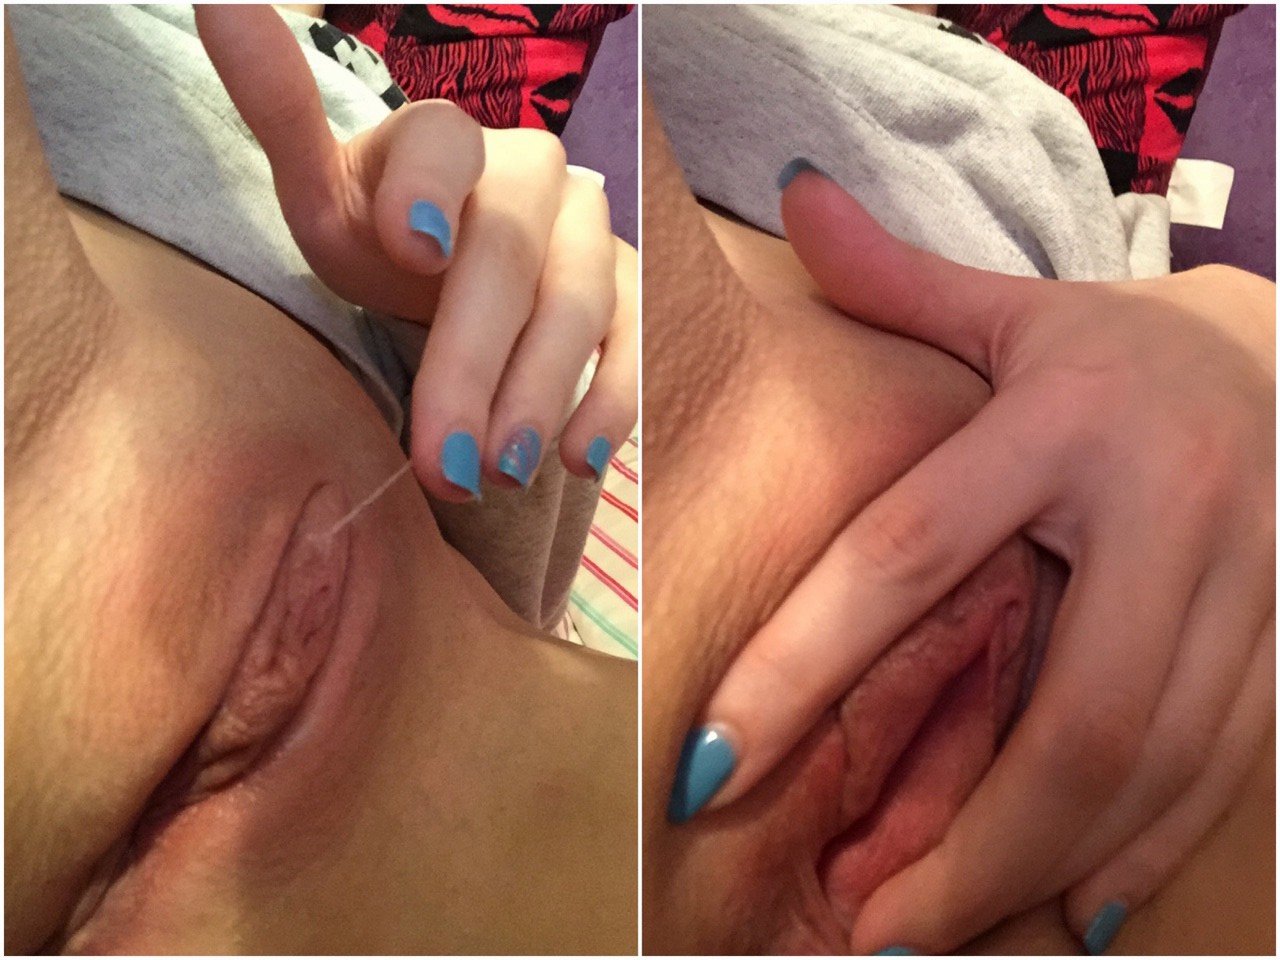 Мужик растрахал рукой выбритую вагину фото